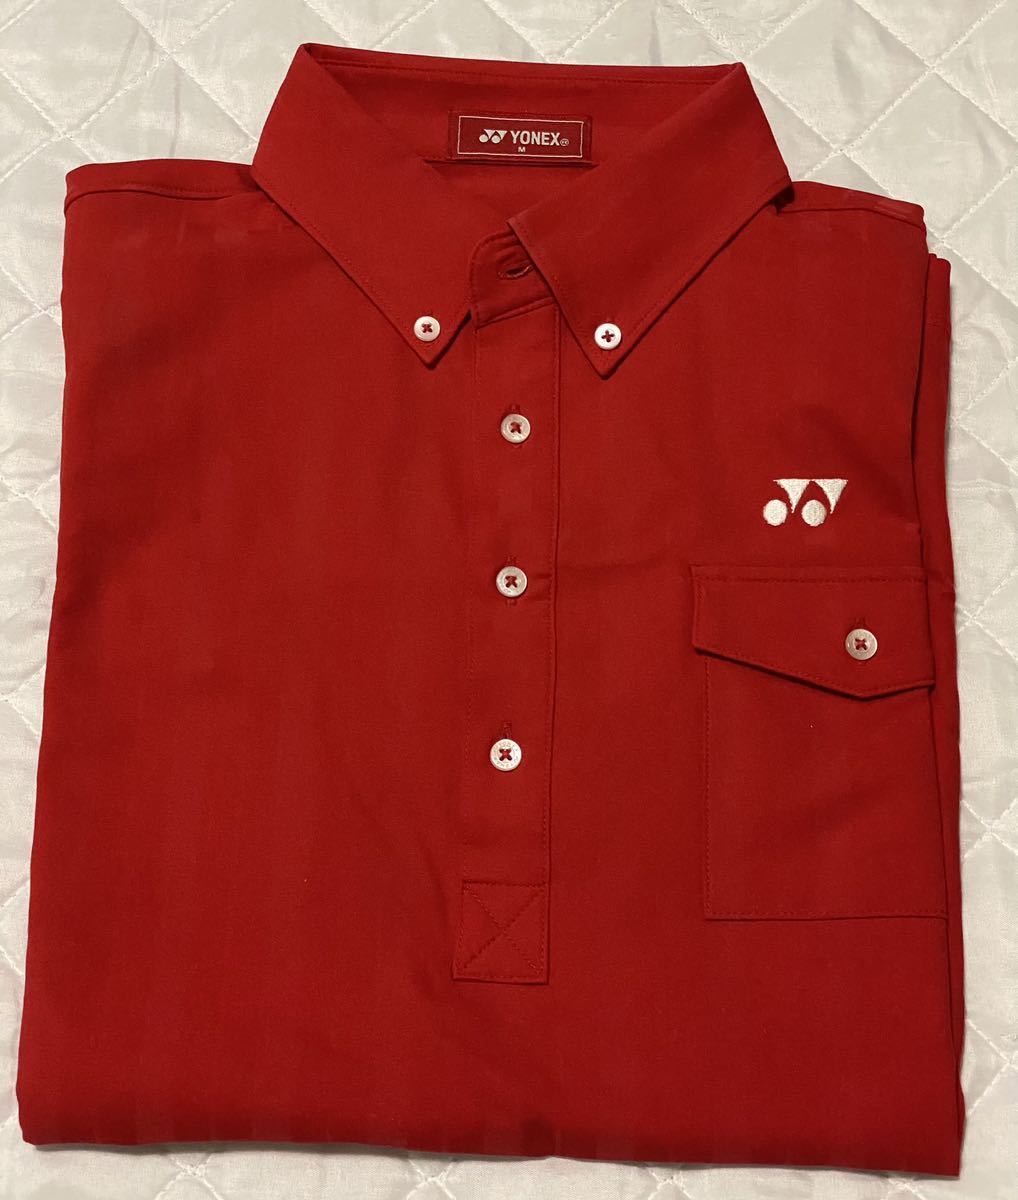  Yonex YONEX Golf wear short sleeves button down polo-shirt M size red 